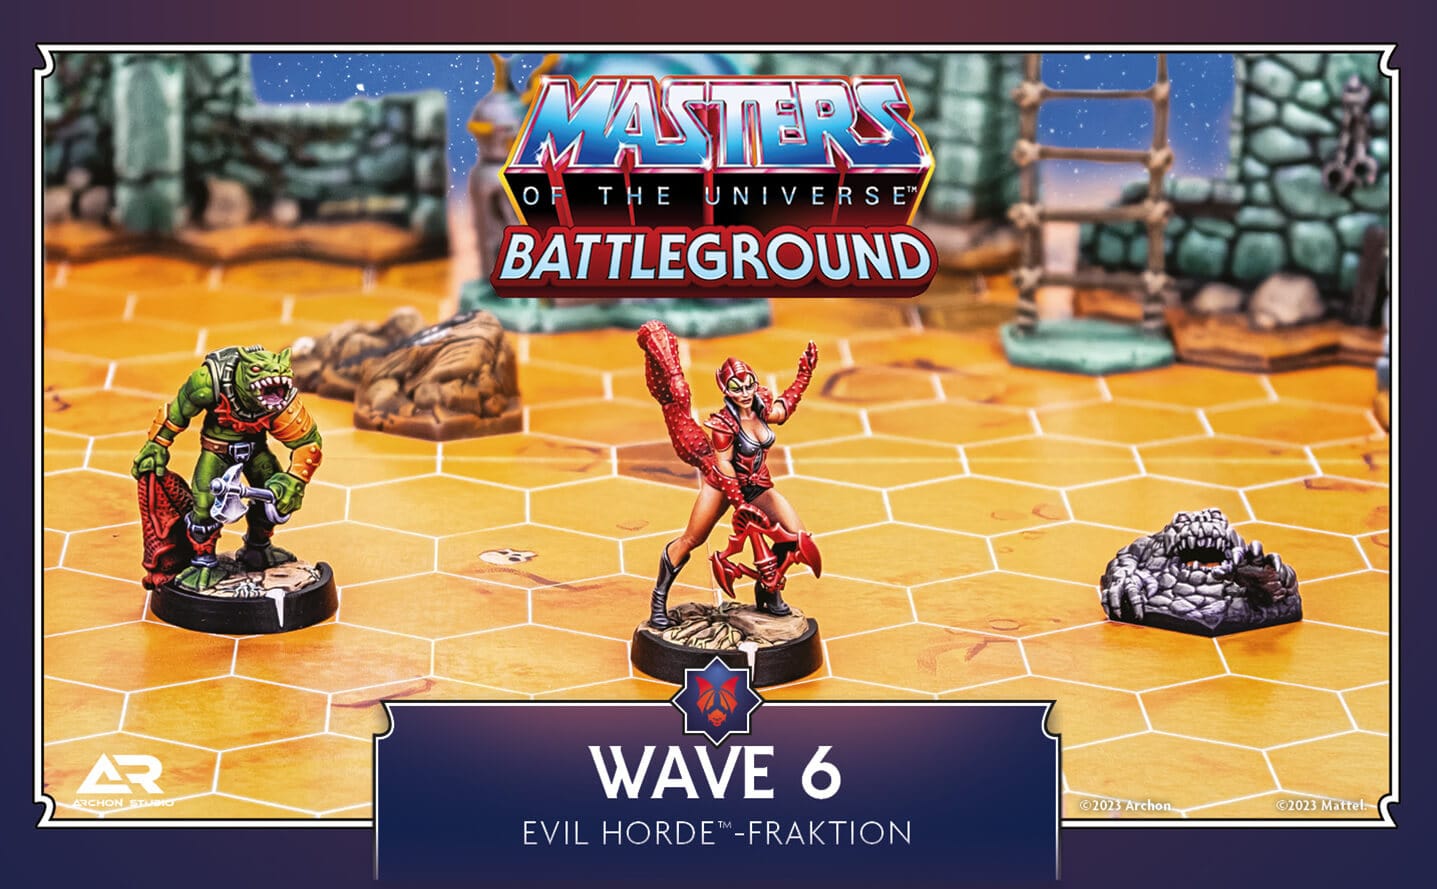 WAVE 6 – The Evil Horde